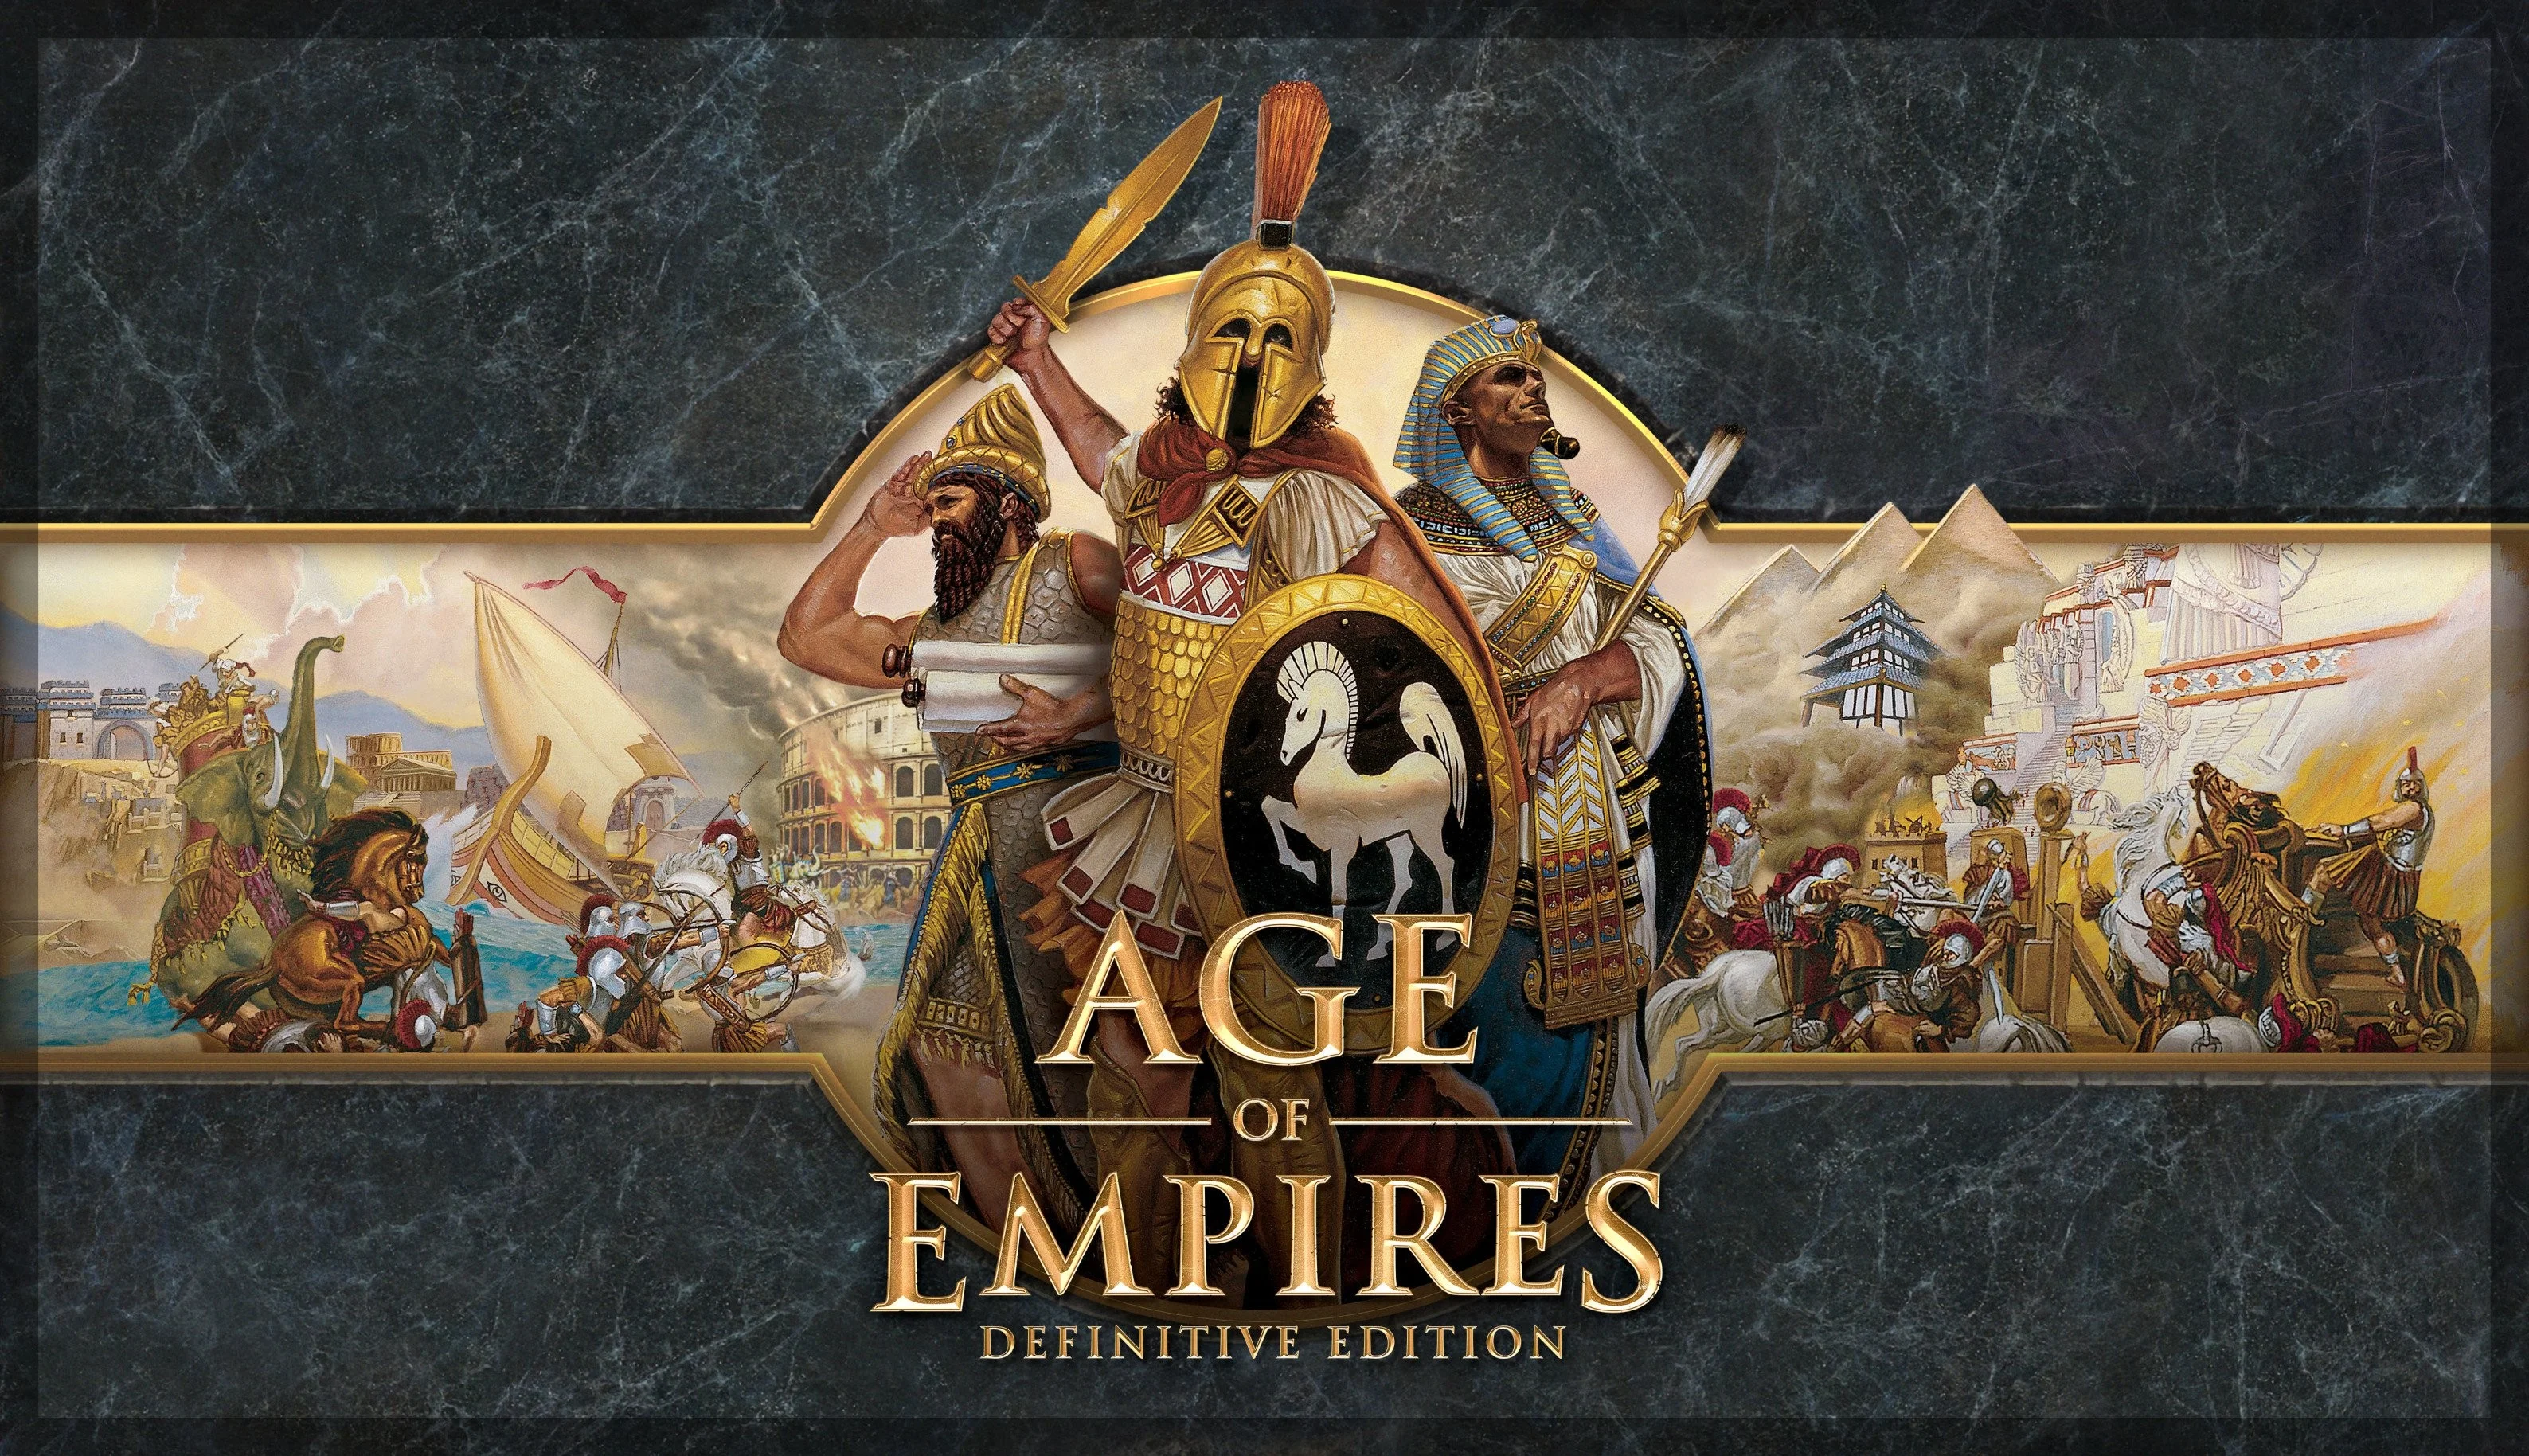 Превью Age of Empires: Definitive Edition. Эпоха империй возвращается! - изображение обложка